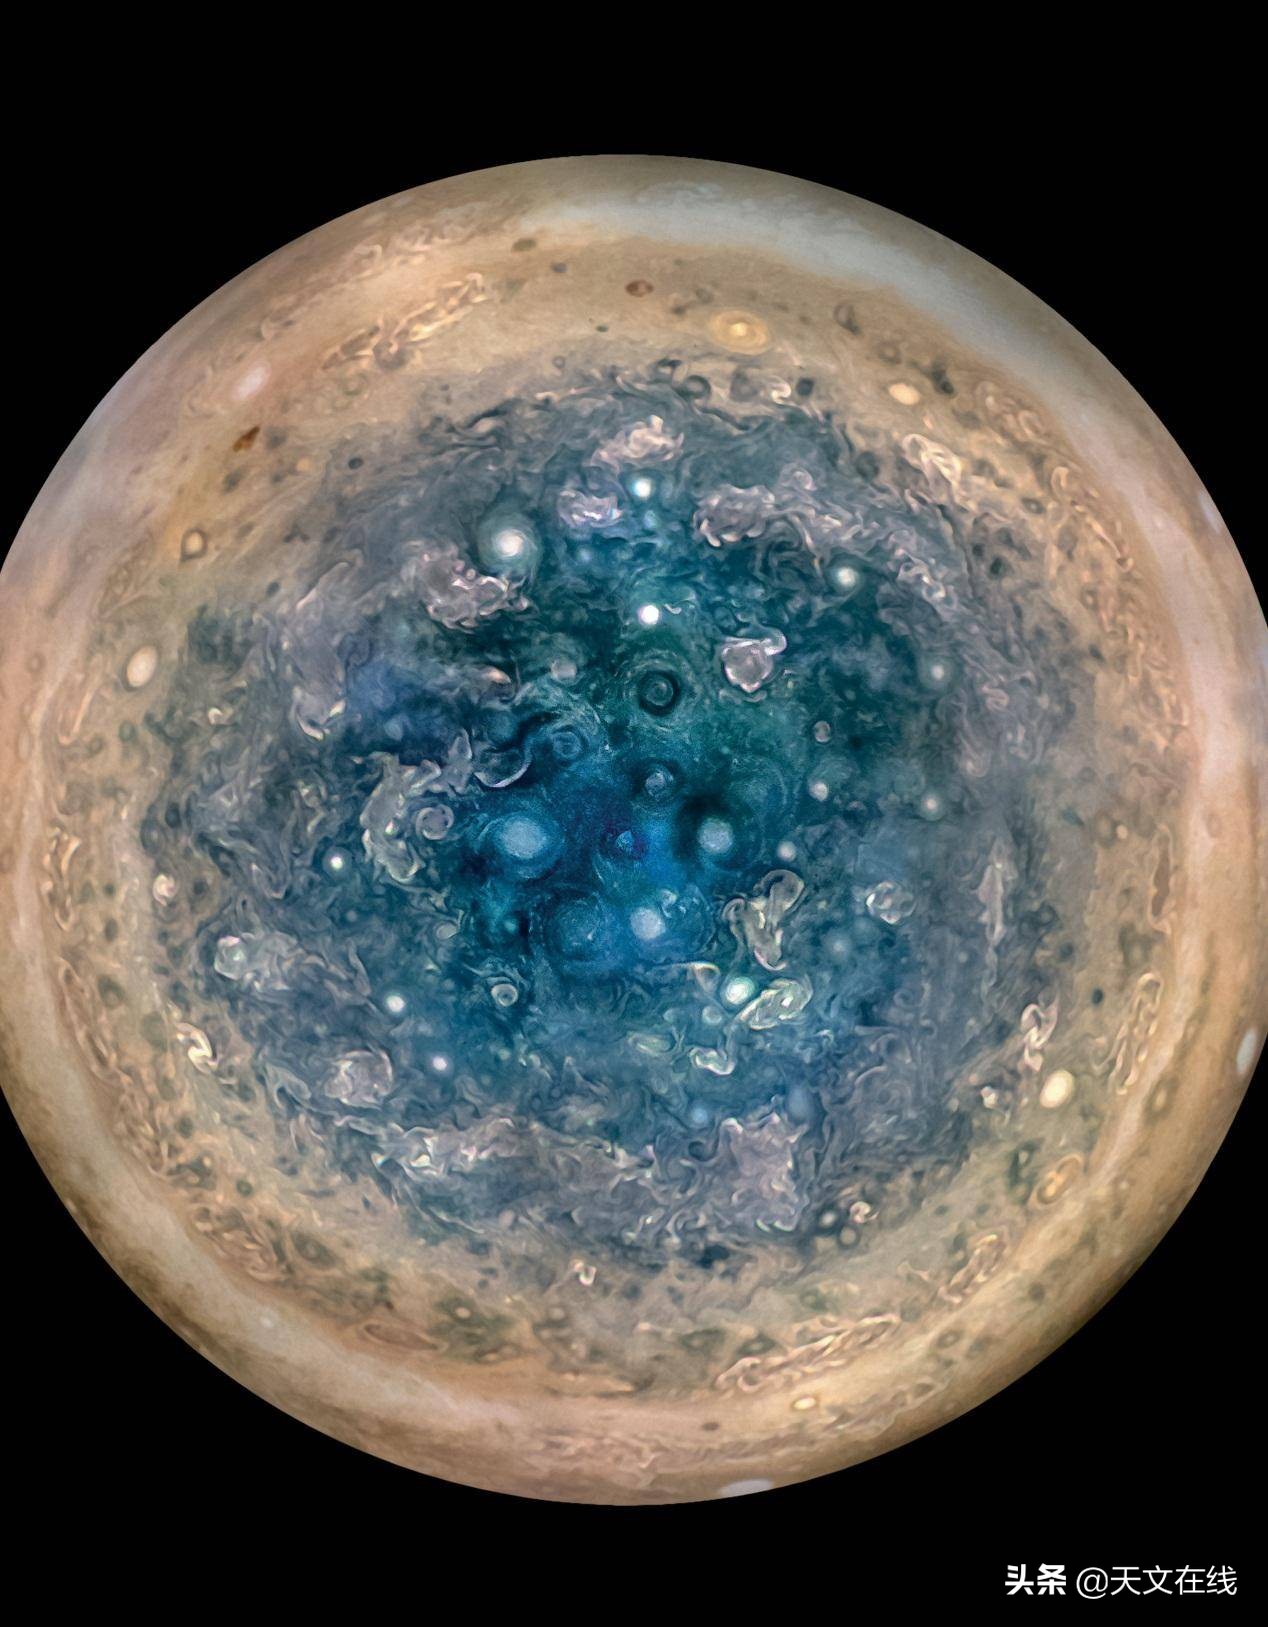 对于朱诺号返回木星，我们能有什么期待呢？